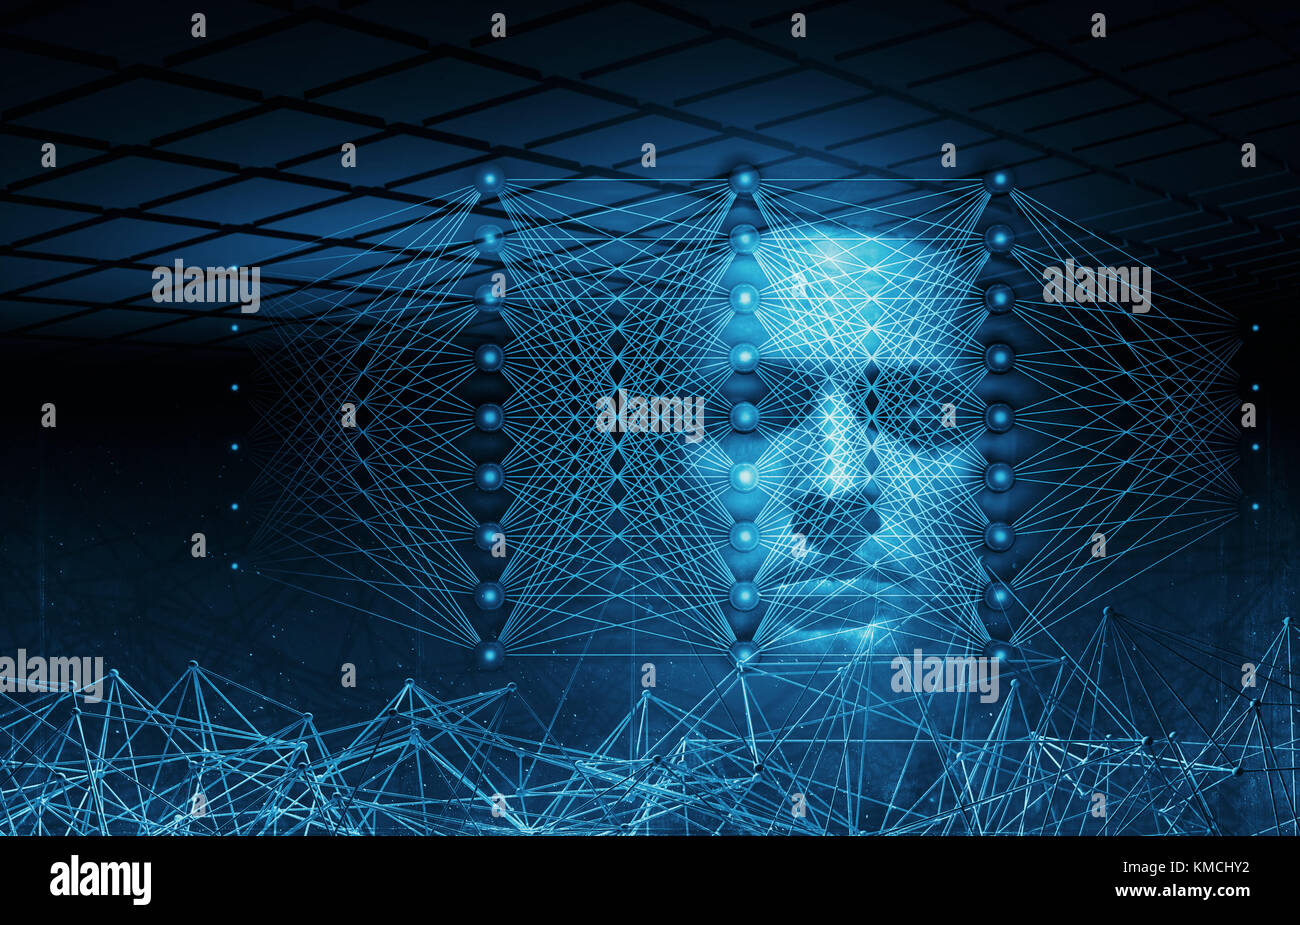 Künstliche Intelligenz konzeptionellen Digitale Illustration mit neuronalen Netzstrukturen und Blau menschliche Gesicht, 3D-Rendering Stockfoto